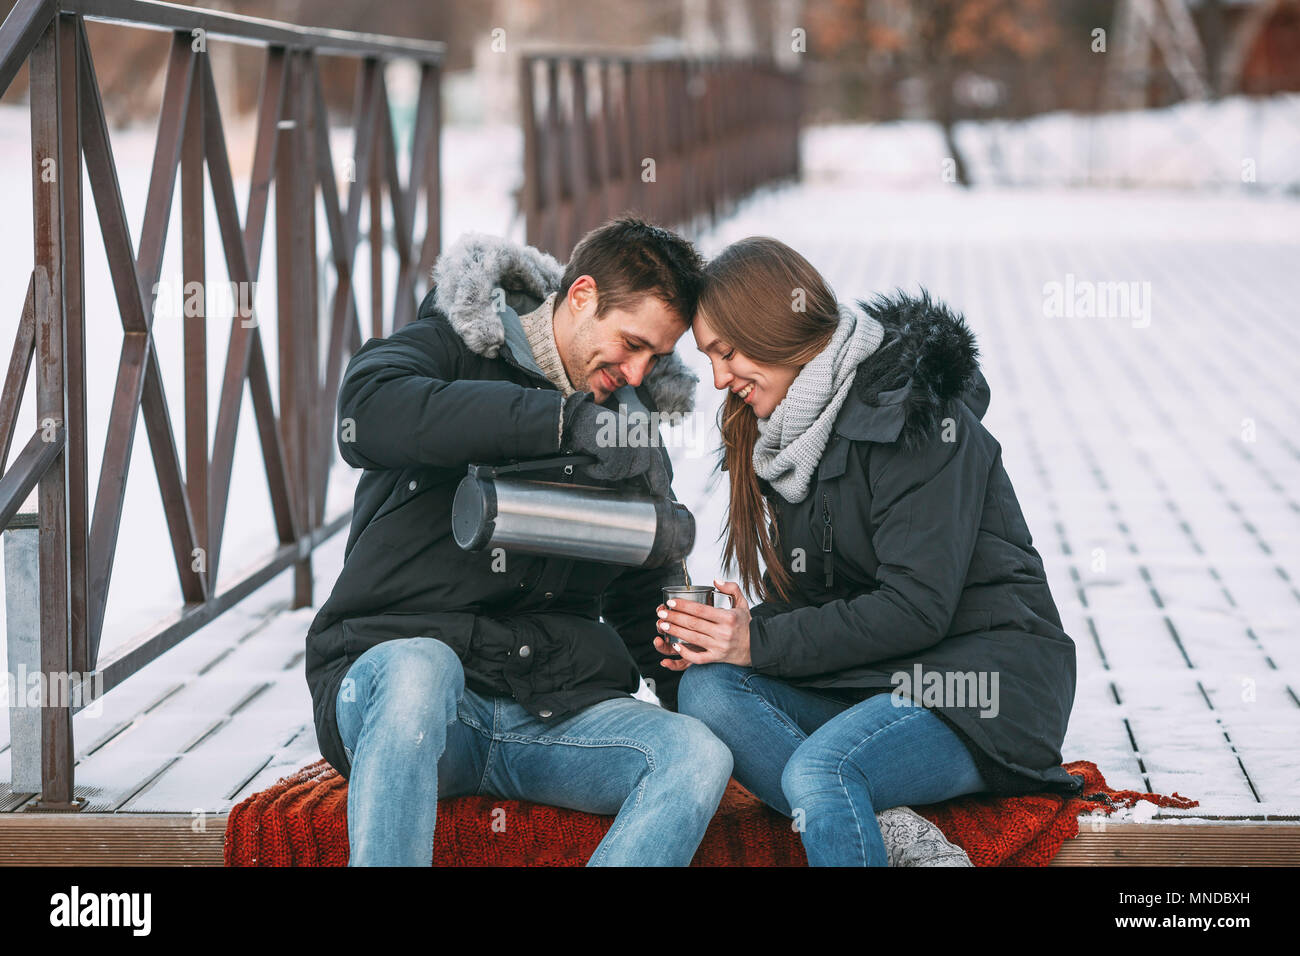 Glückliche Menschen gießen Drink von isolierten Behälter auf der Promenade im Winter Stockfoto